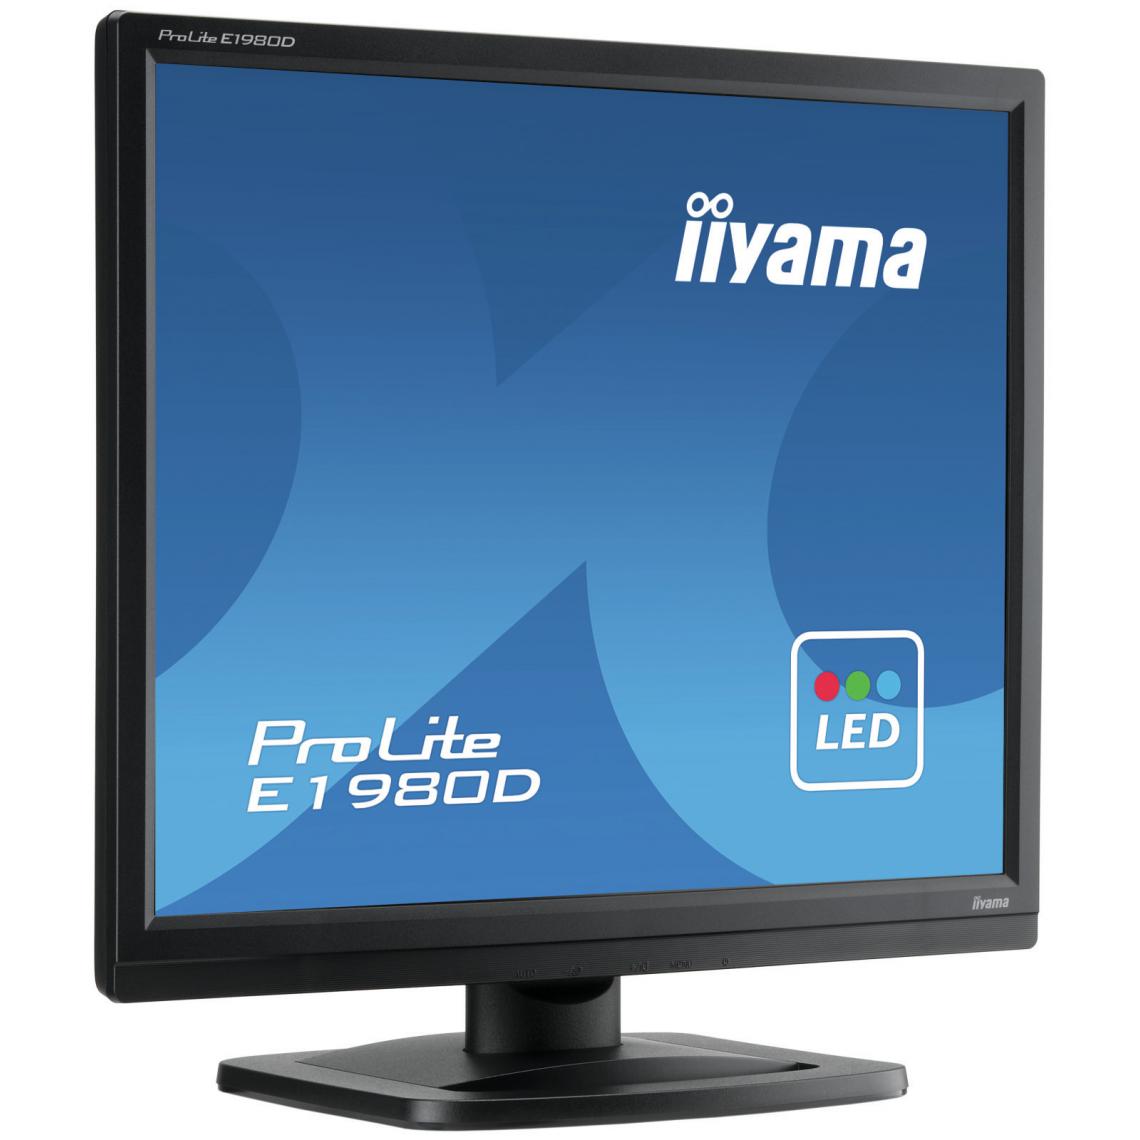 Iiyama - Ecran 19'' Noir LED 5:4 1280x1024 5ms 250 cd/m VGA DVI / E1980D-B1 - Moniteur PC